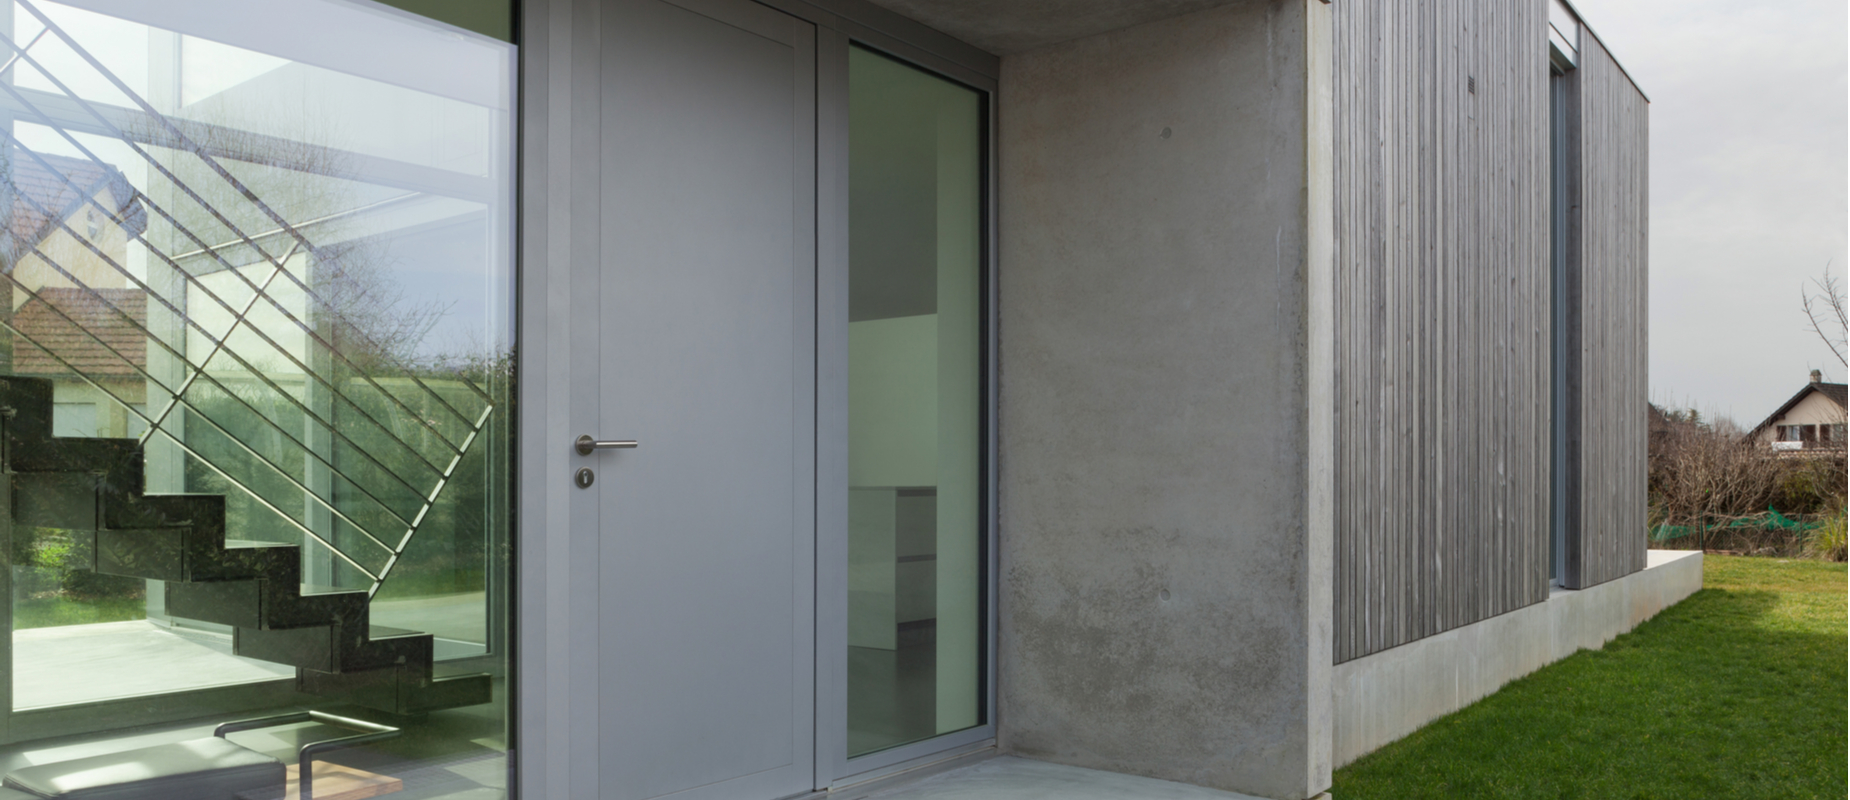 Comment faire l'isolation phonique d'une porte ?